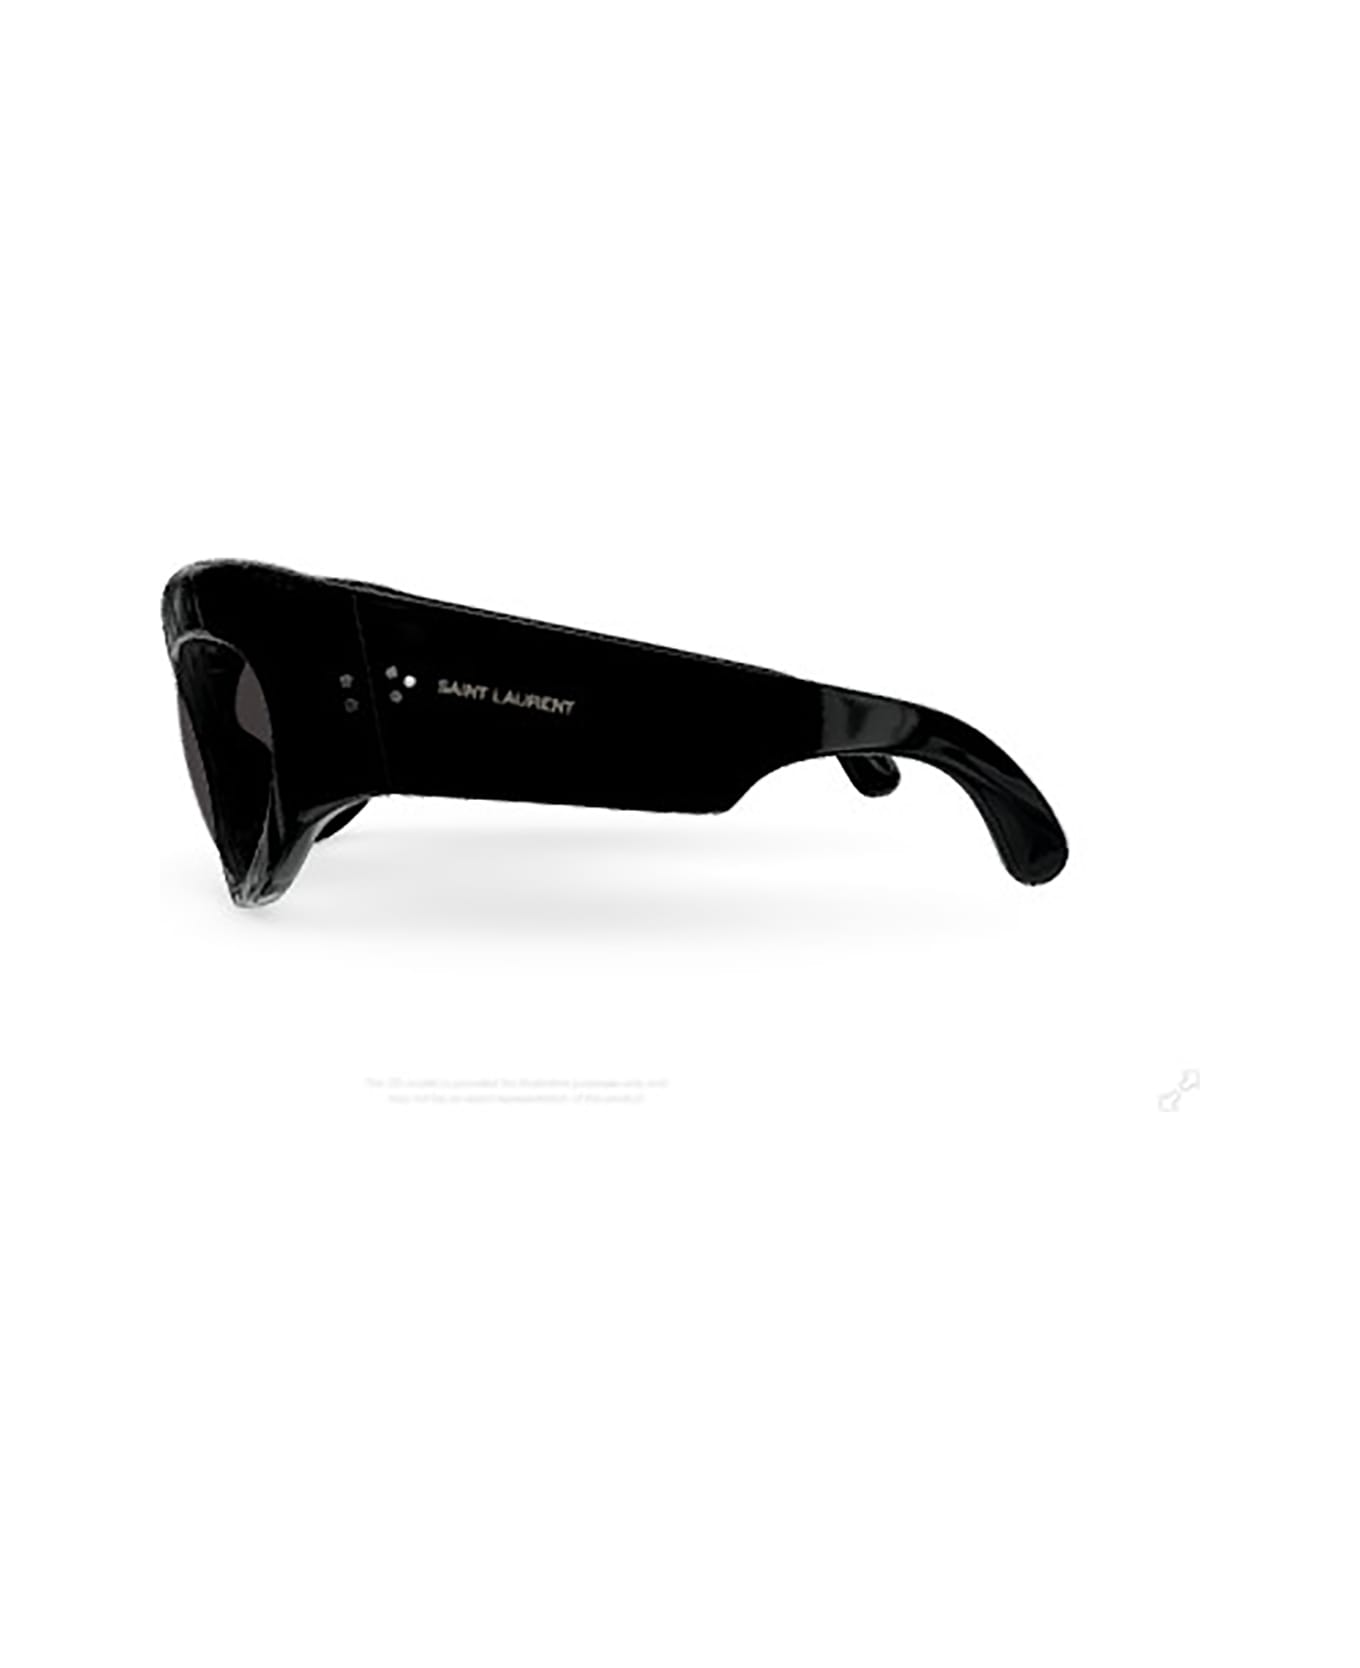 Saint Laurent Eyewear SL 73 Sunglasses - Black Black Black